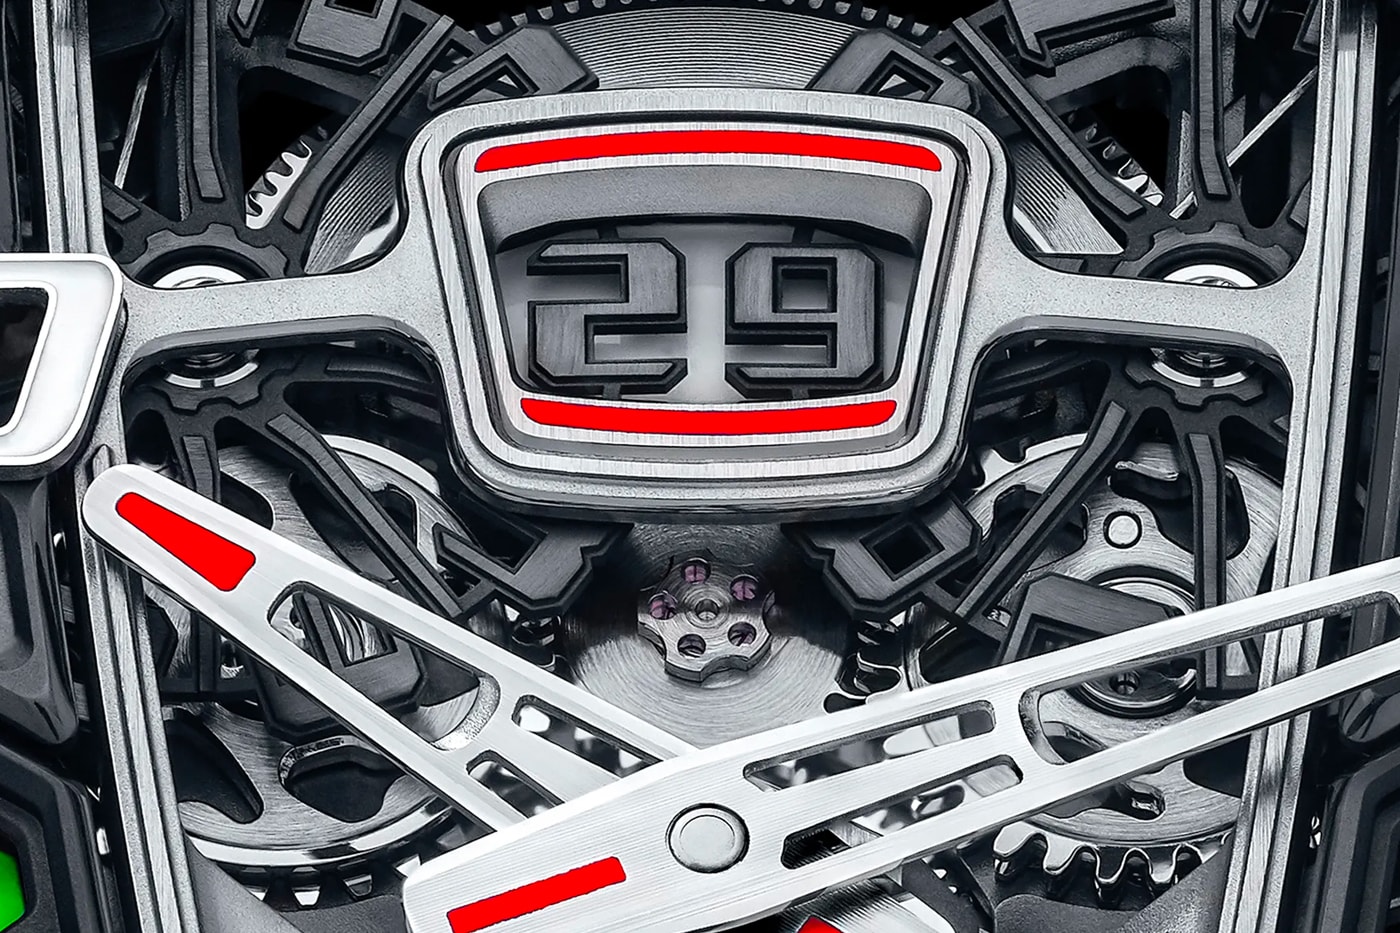 맥라렌 x 리차드 밀이 제작한 ‘오토매틱 투르비용’의 모습은?, 하이퍼 GT카, 스피드테일, 스위스 럭셔리 워치 브랜드